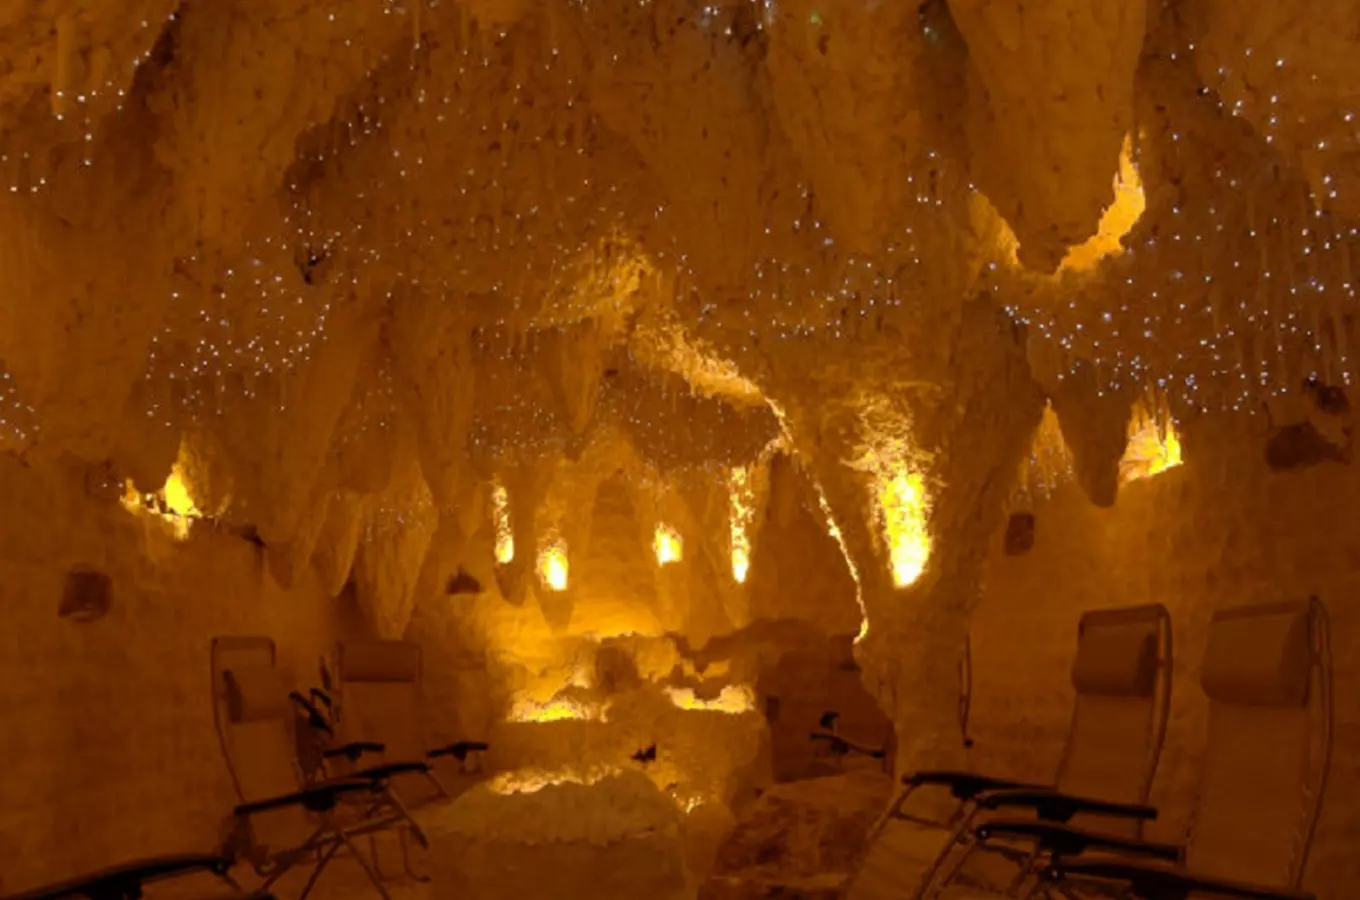 Solná jeskyně Mineral v Holešovicích 